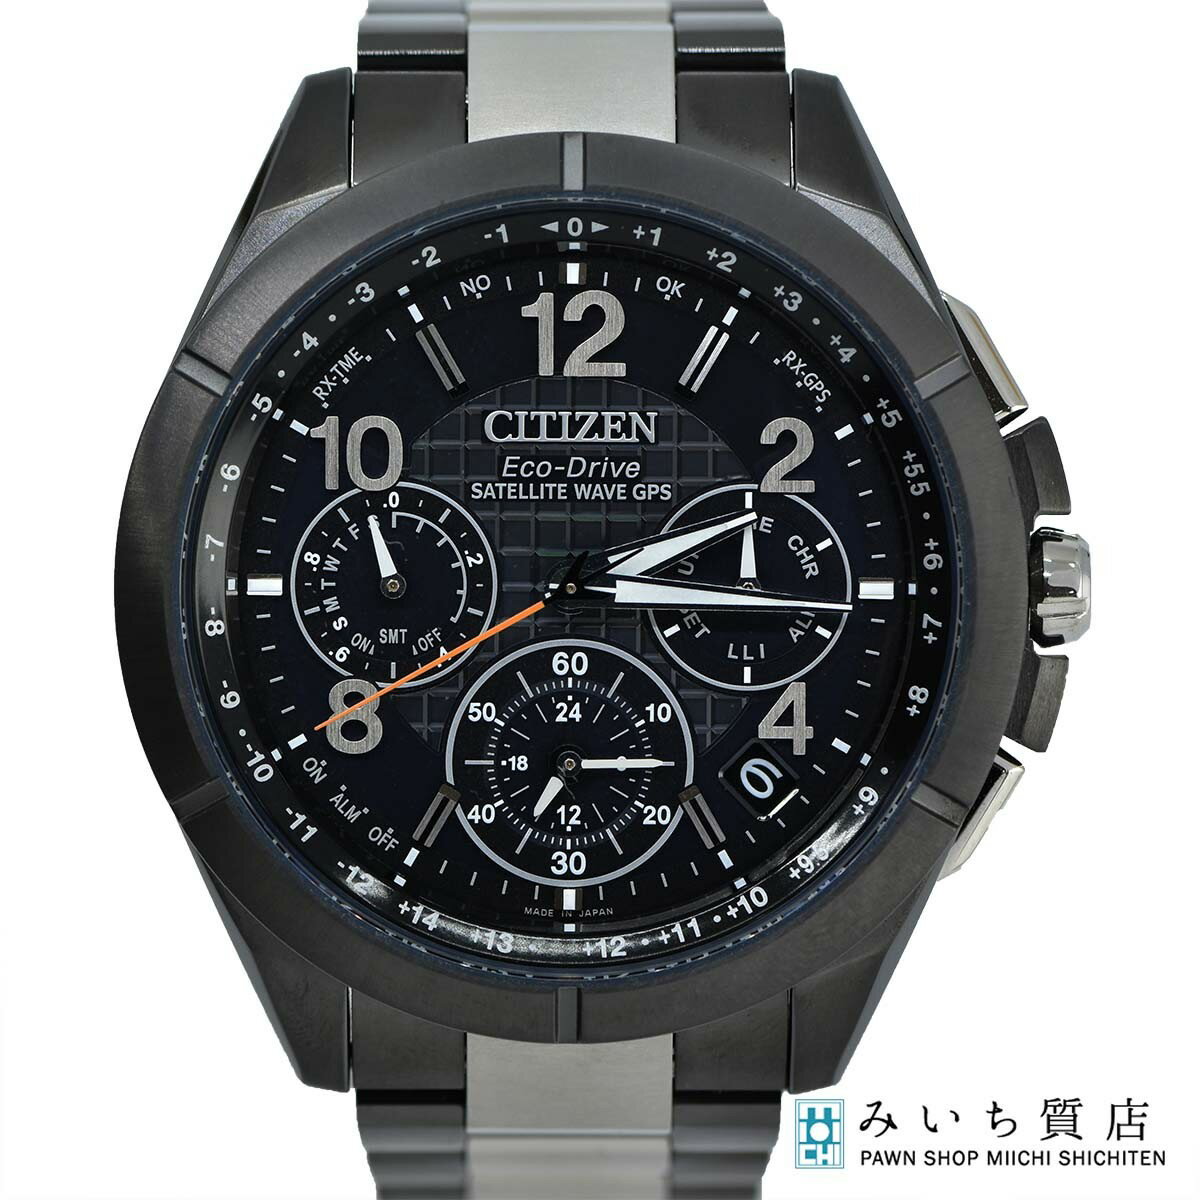 質屋 腕時計 CITIZEN シチズン エコドライブ CC9075-52E ソーラー電波 メンズ 時計 チタン みいち質店